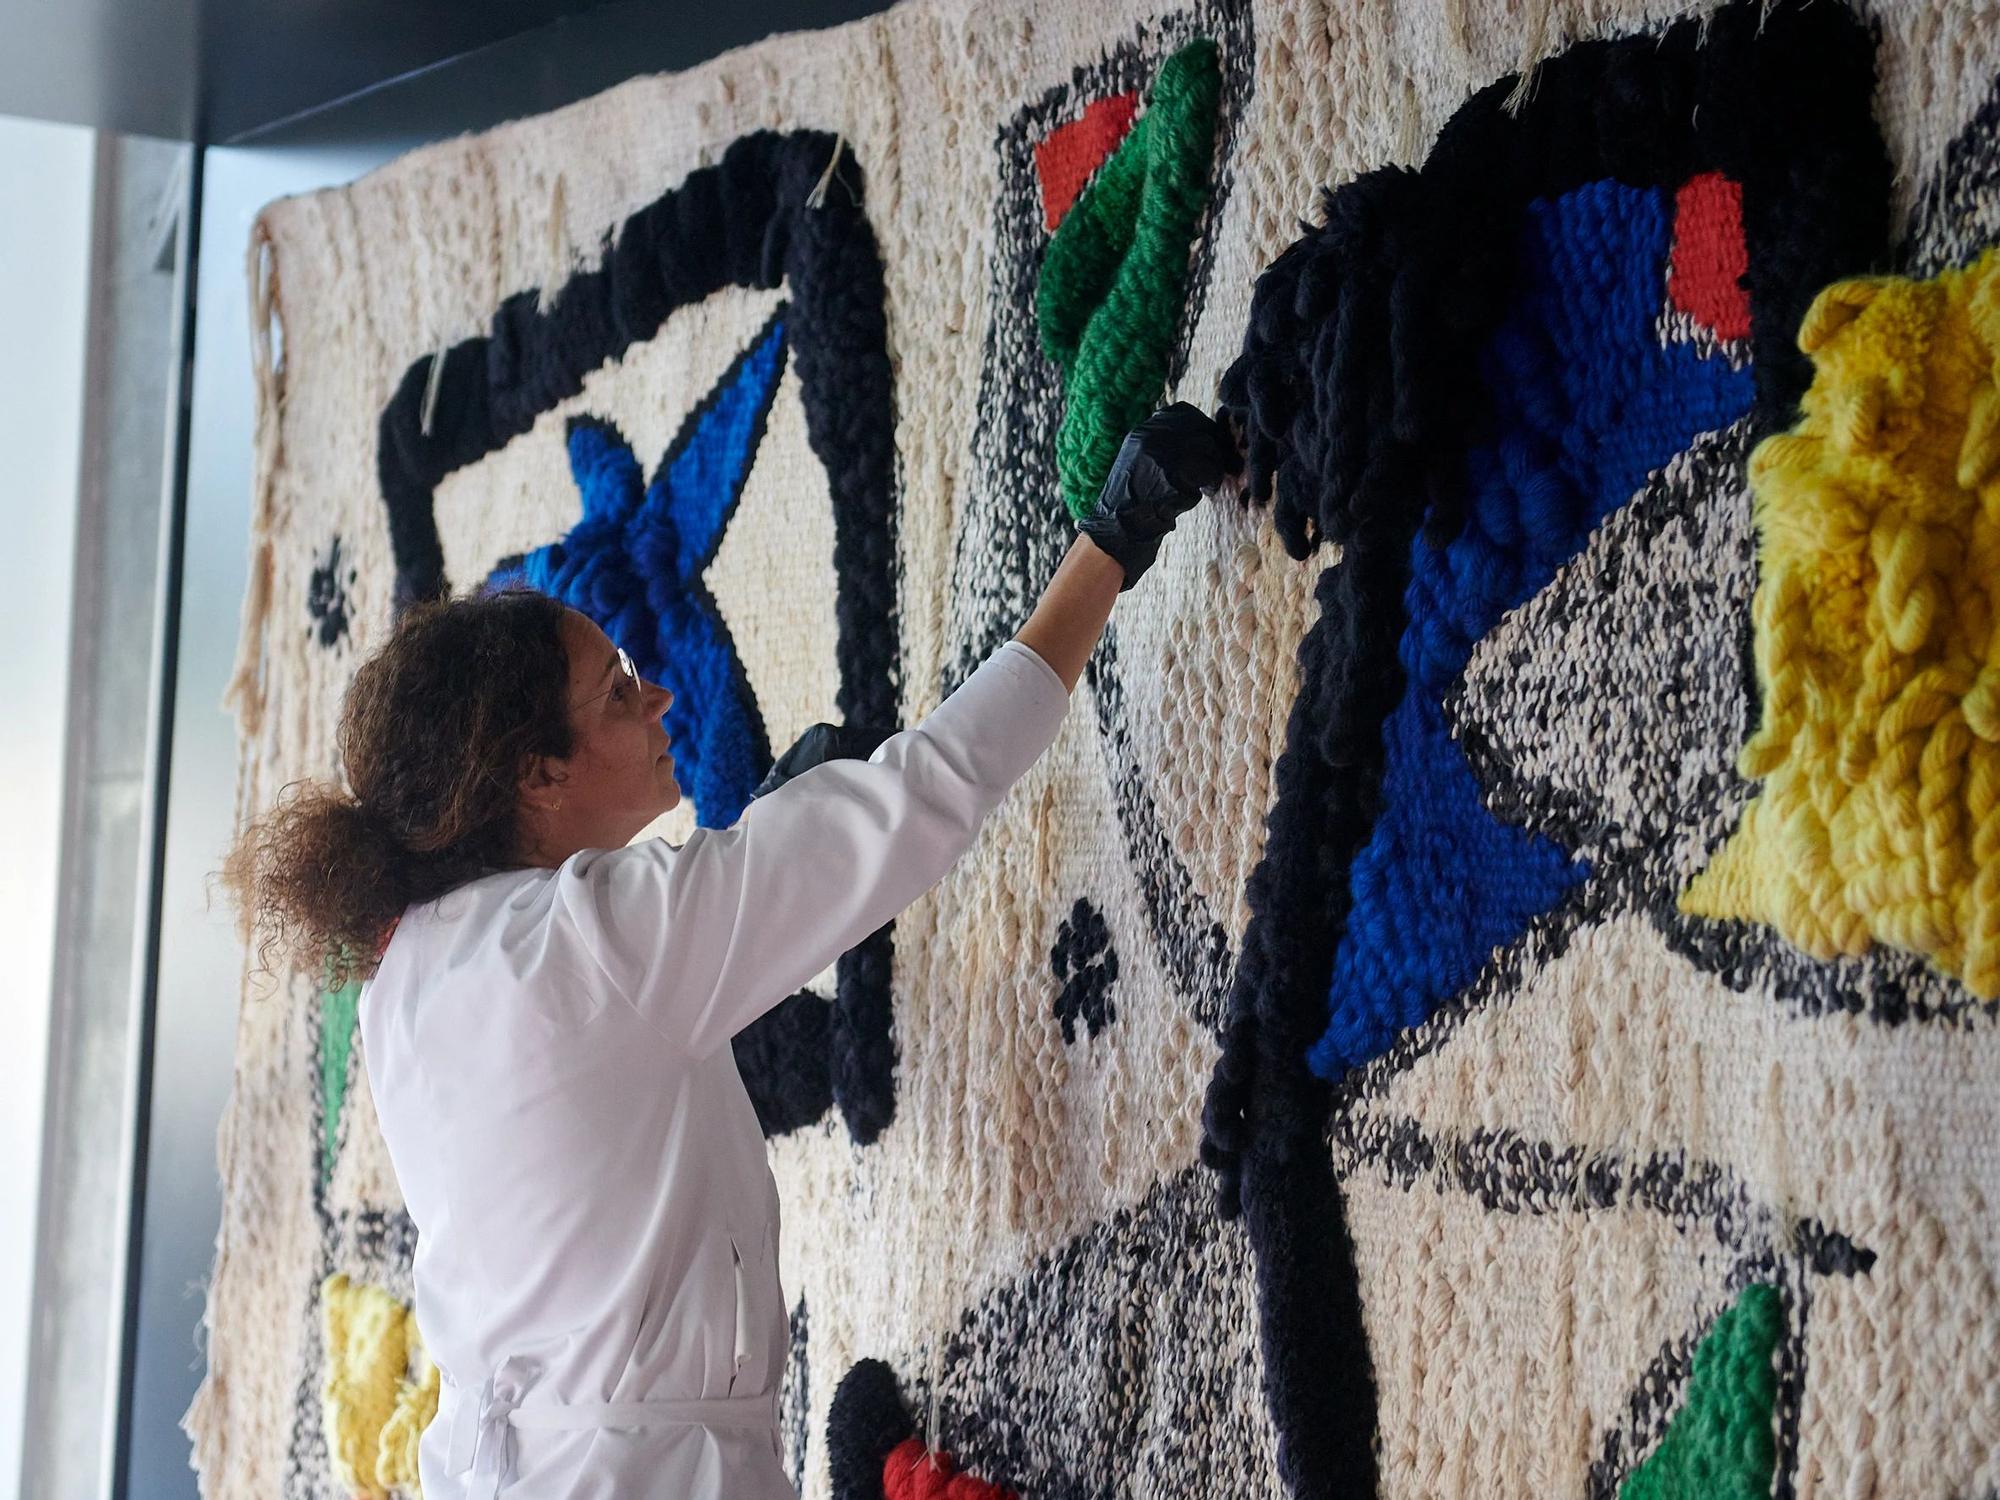 El CaixaForum Zaragoza muestra un gran tapiz de Miró